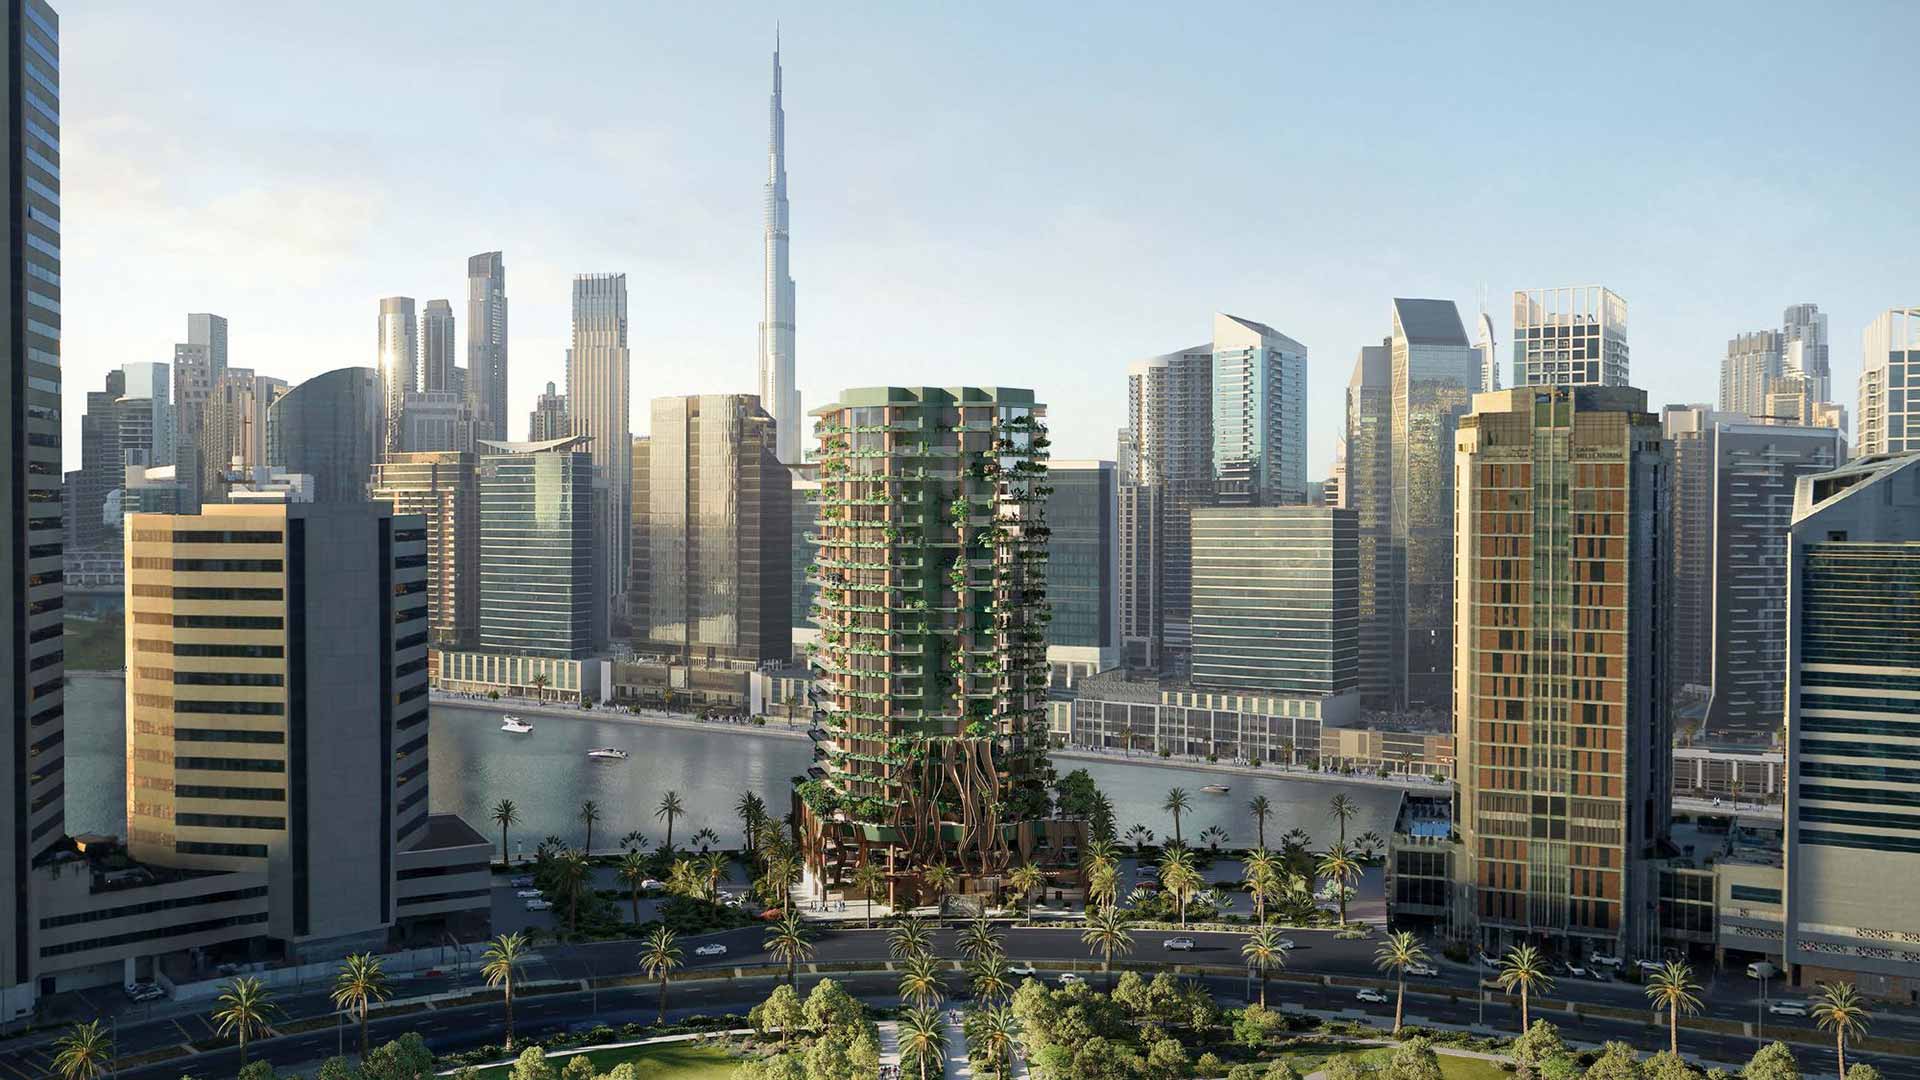 Architecture inspirée de l’arbre de vie, Eywa, Dubaï (+VIDEO)